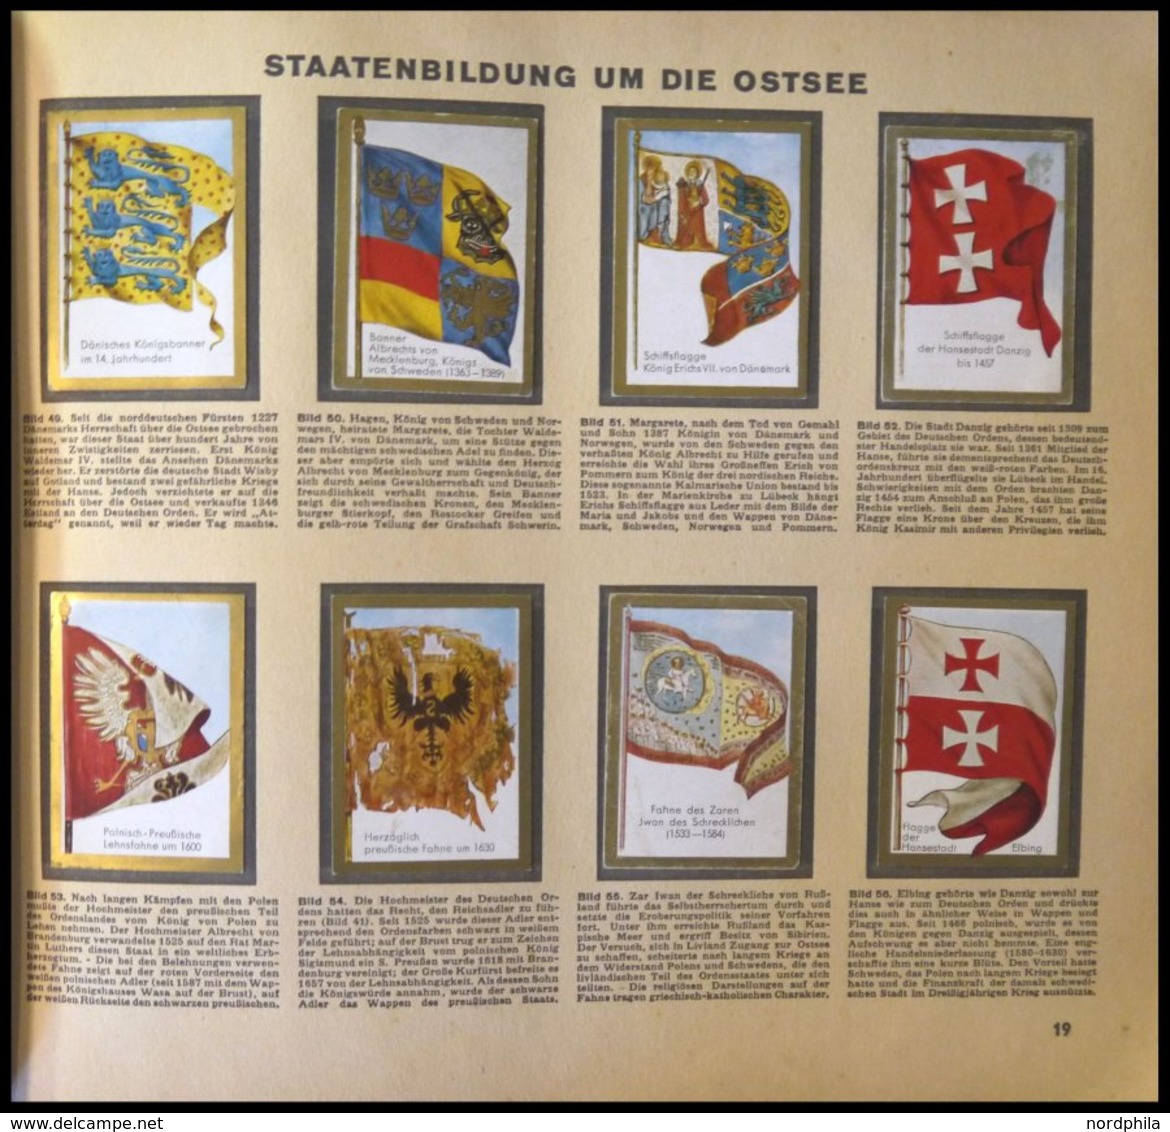 SONSTIGE MOTIVE Sammelbilderalbum Die Welt In Bildern - Historische Fahnen, Album 8, Leichte Gebrauchsspuren - Non Classificati